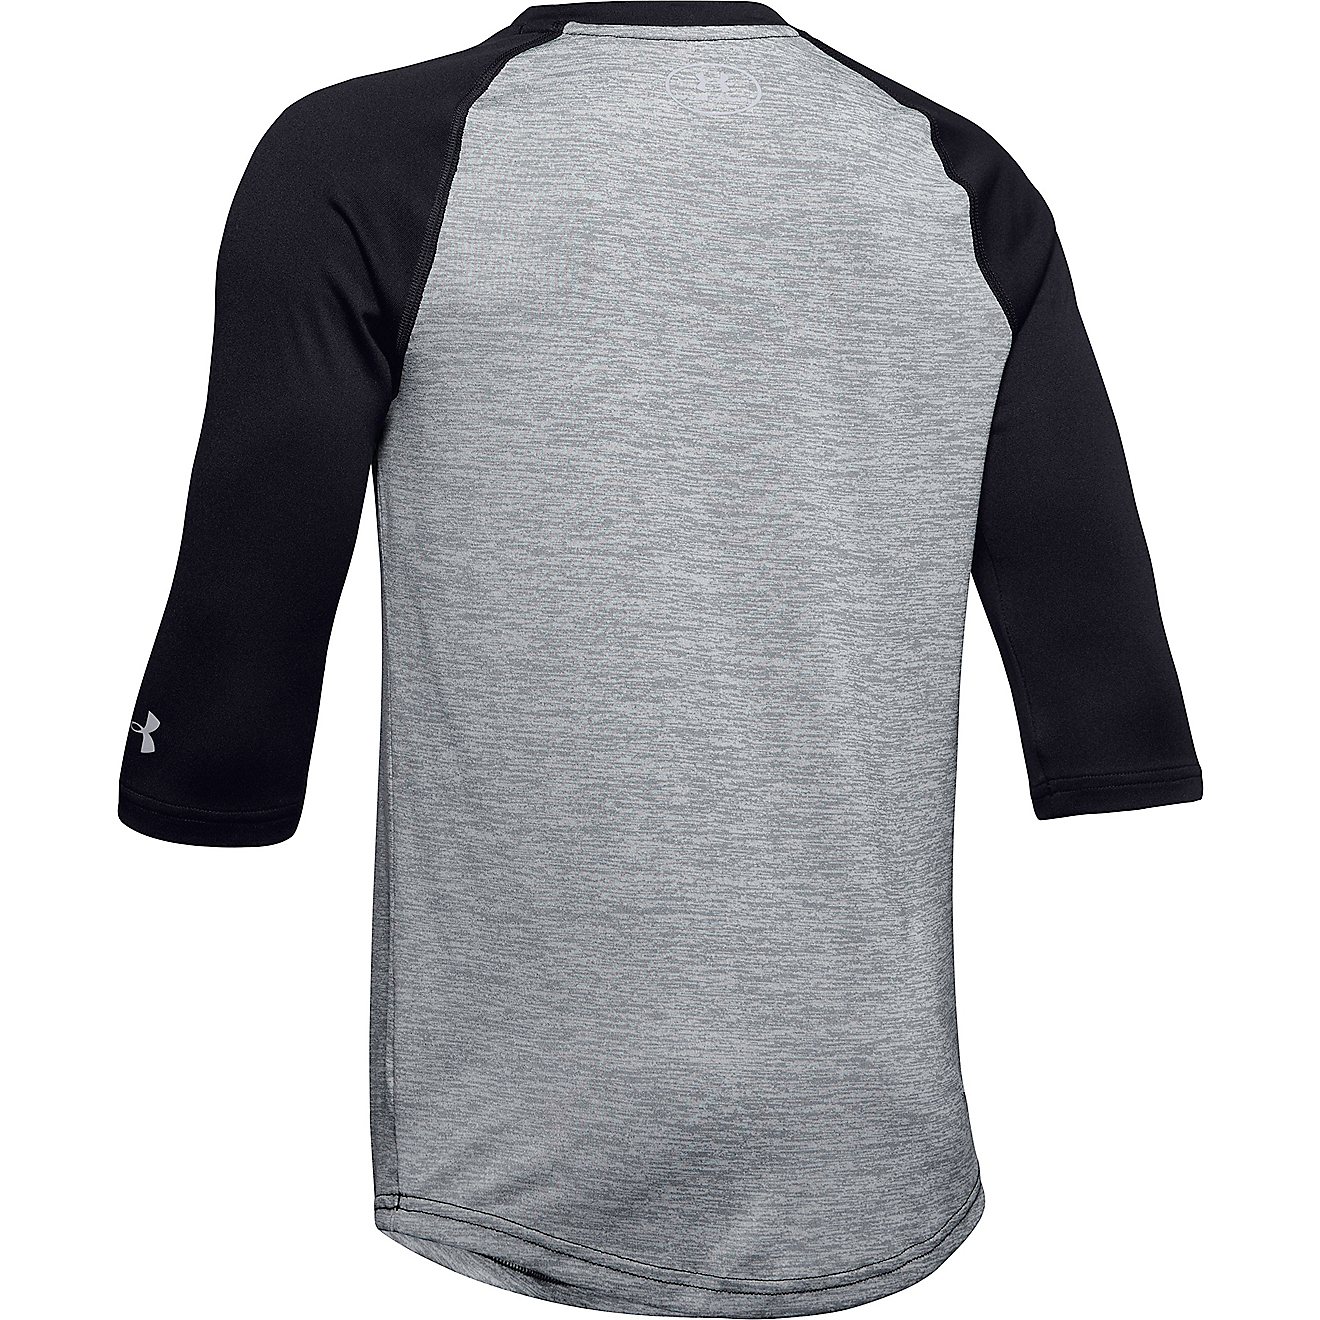 NWT Details about   Under Armour Shirt Boy's XL UA Bullpen 3/4 Sleeve Baseball shirt 